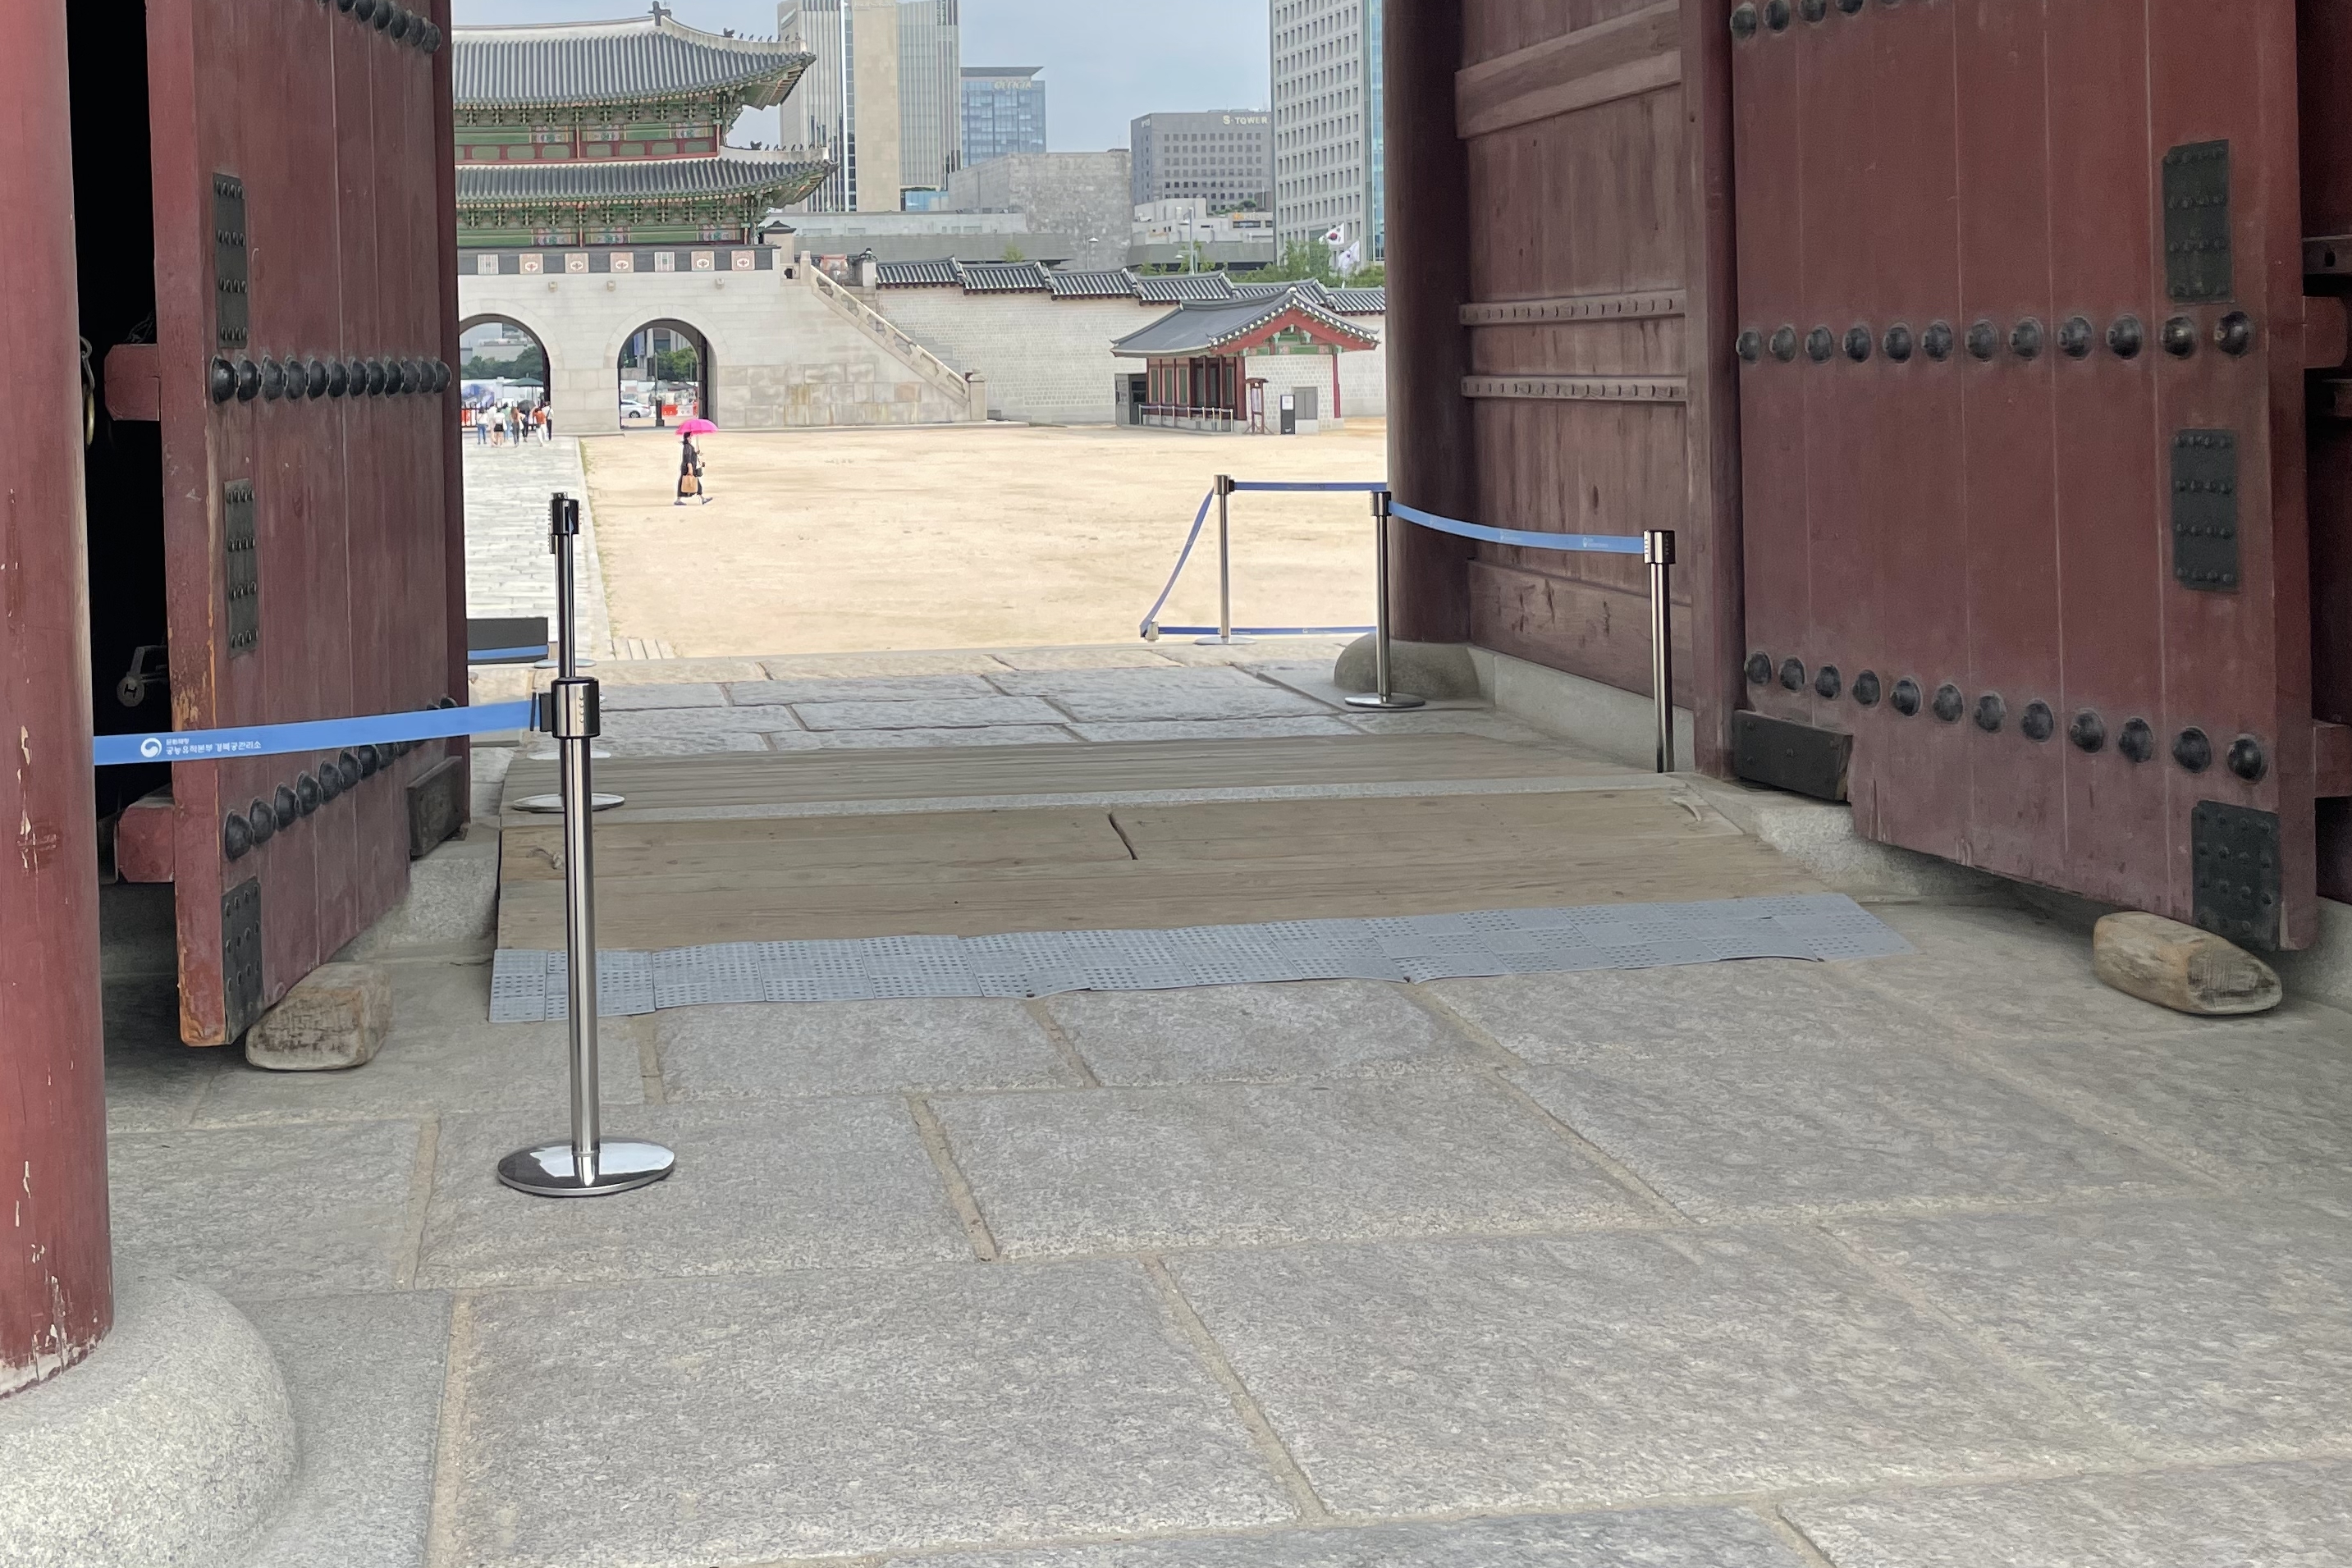 Entryway and Main entrance0 : Main entrance of Gyeongbokgung Palace that has a steep slope
